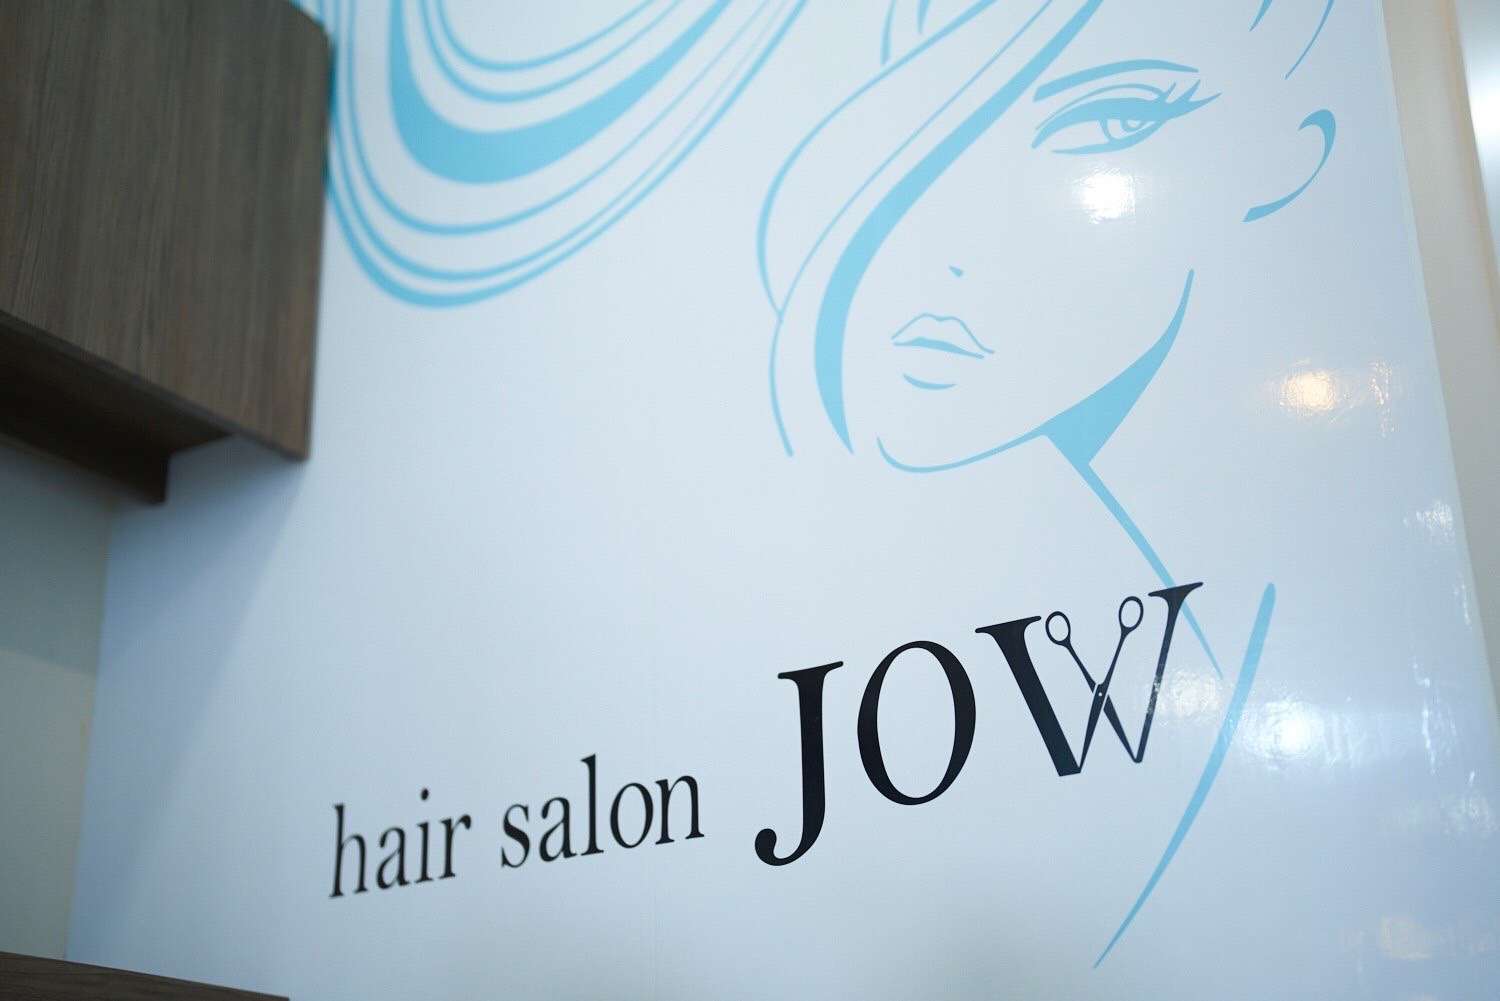 hair salon JOW